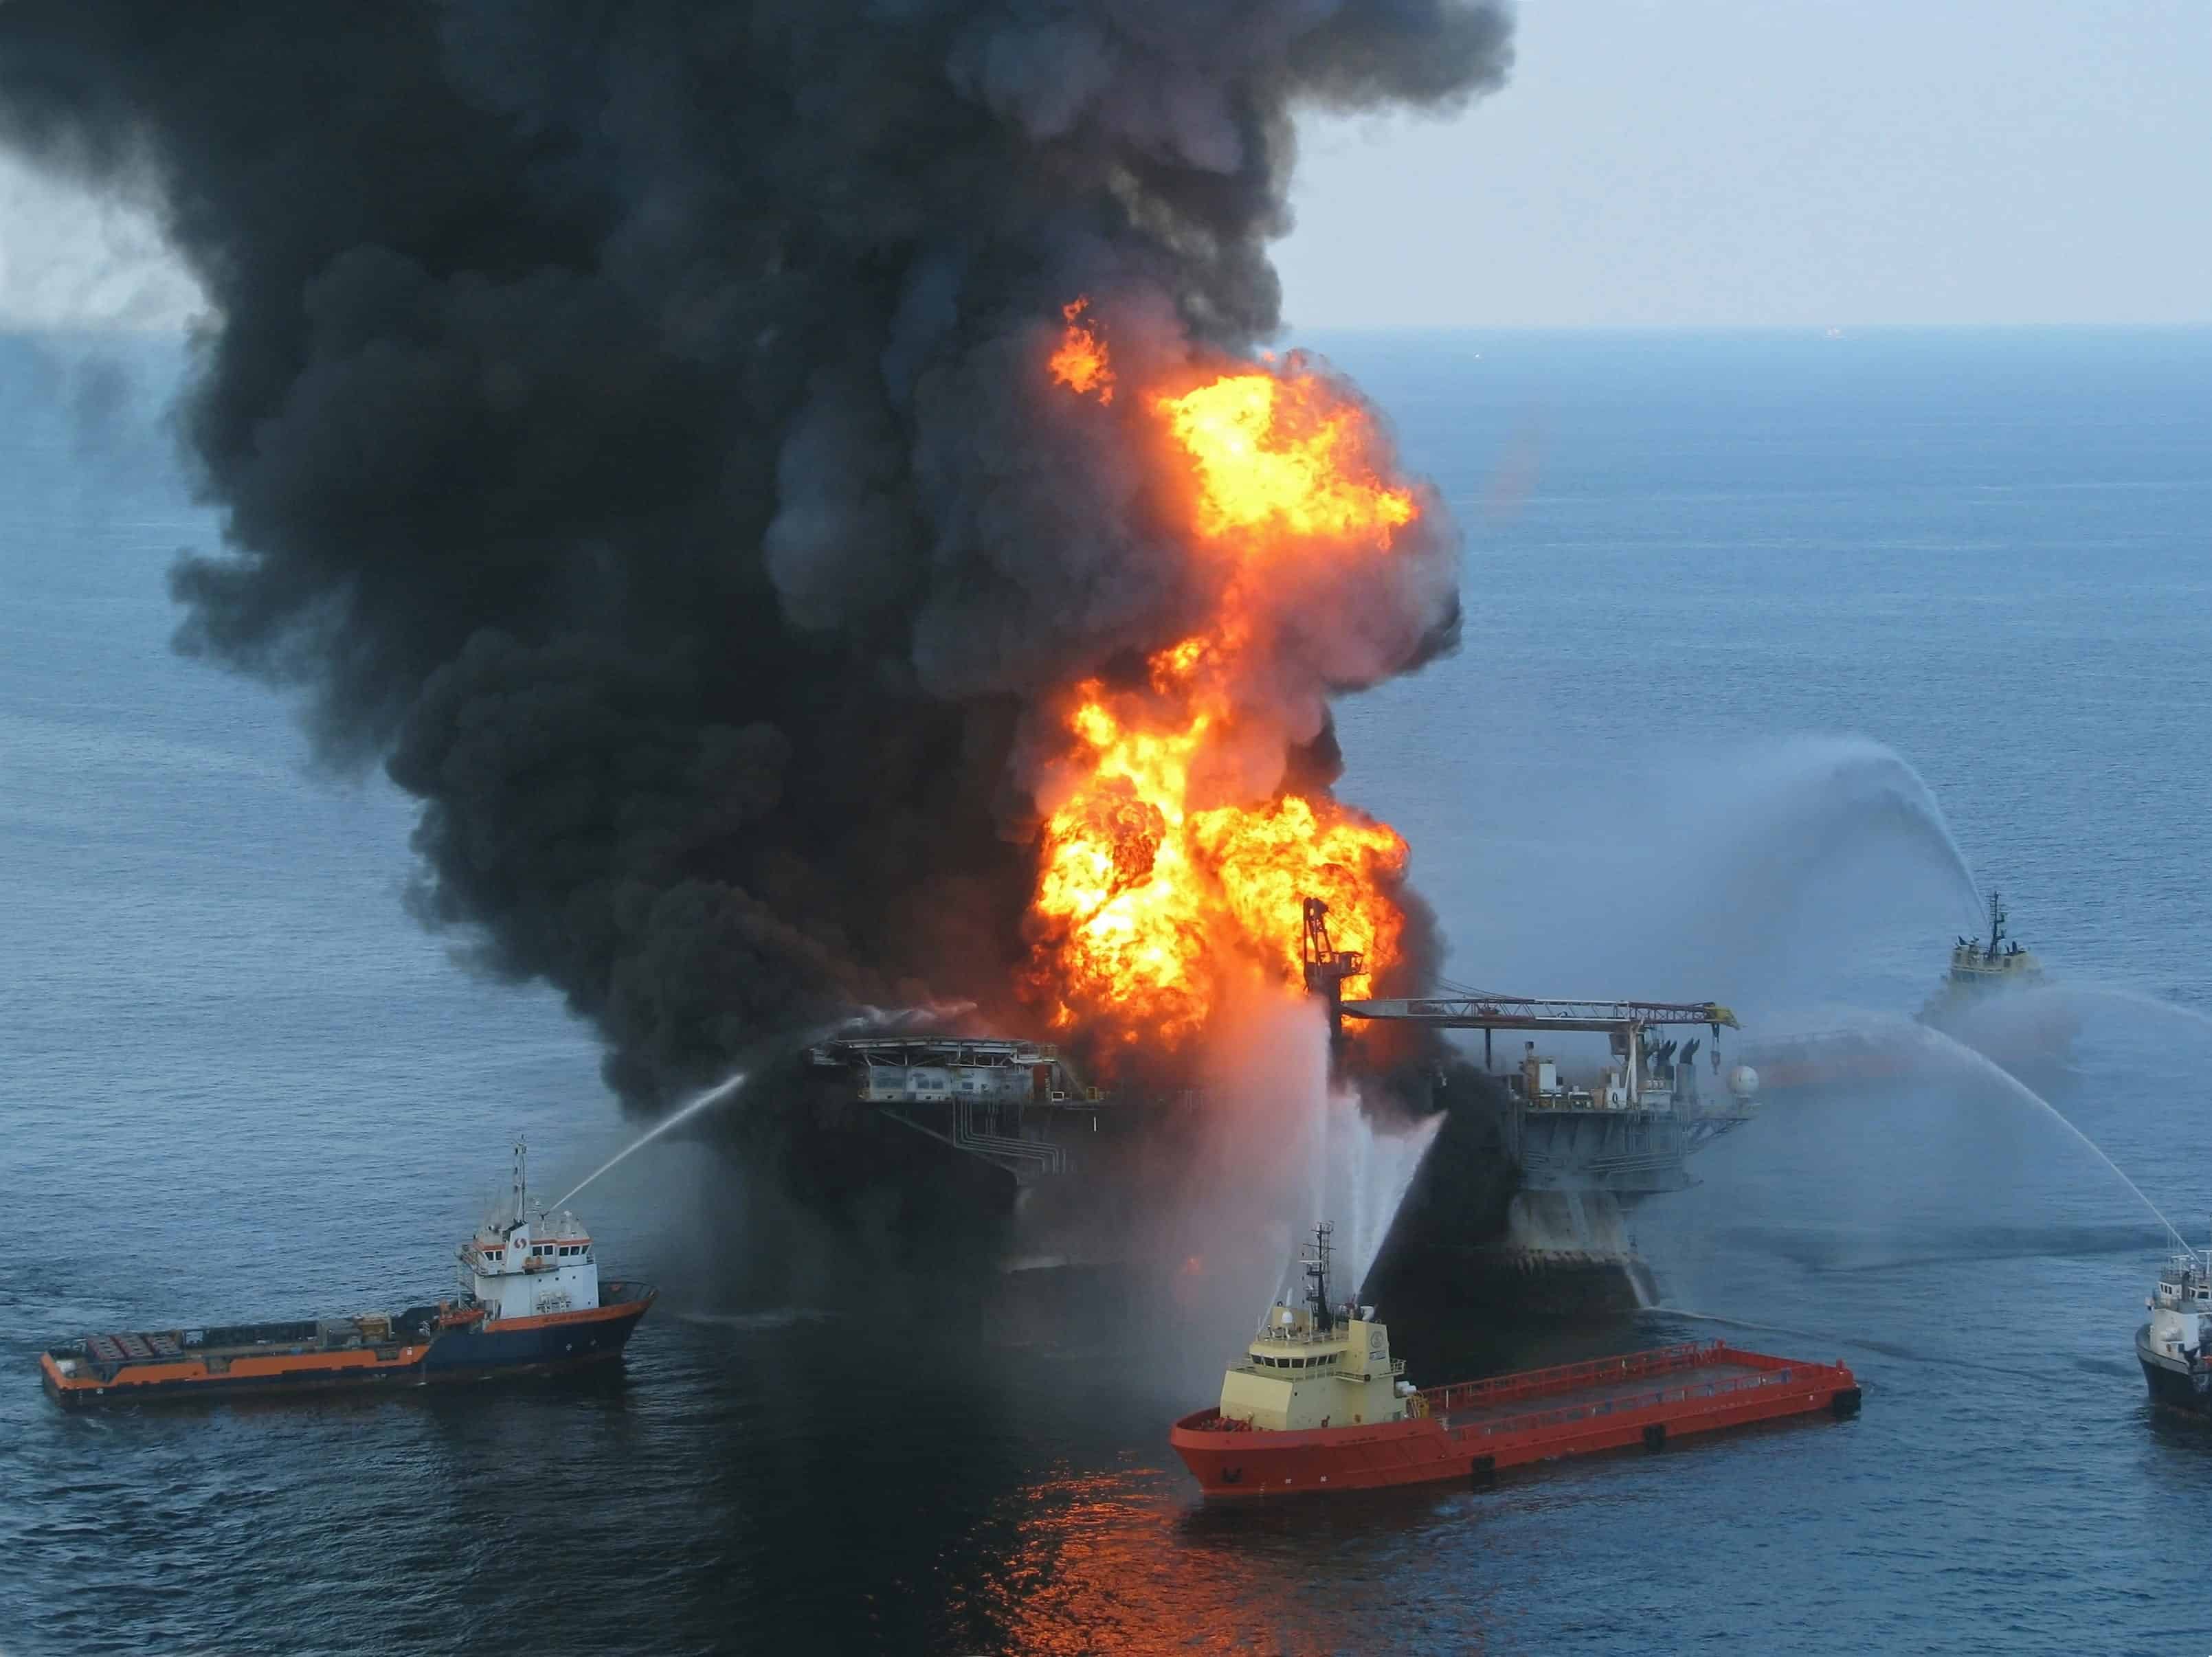 Fire at an oil platform